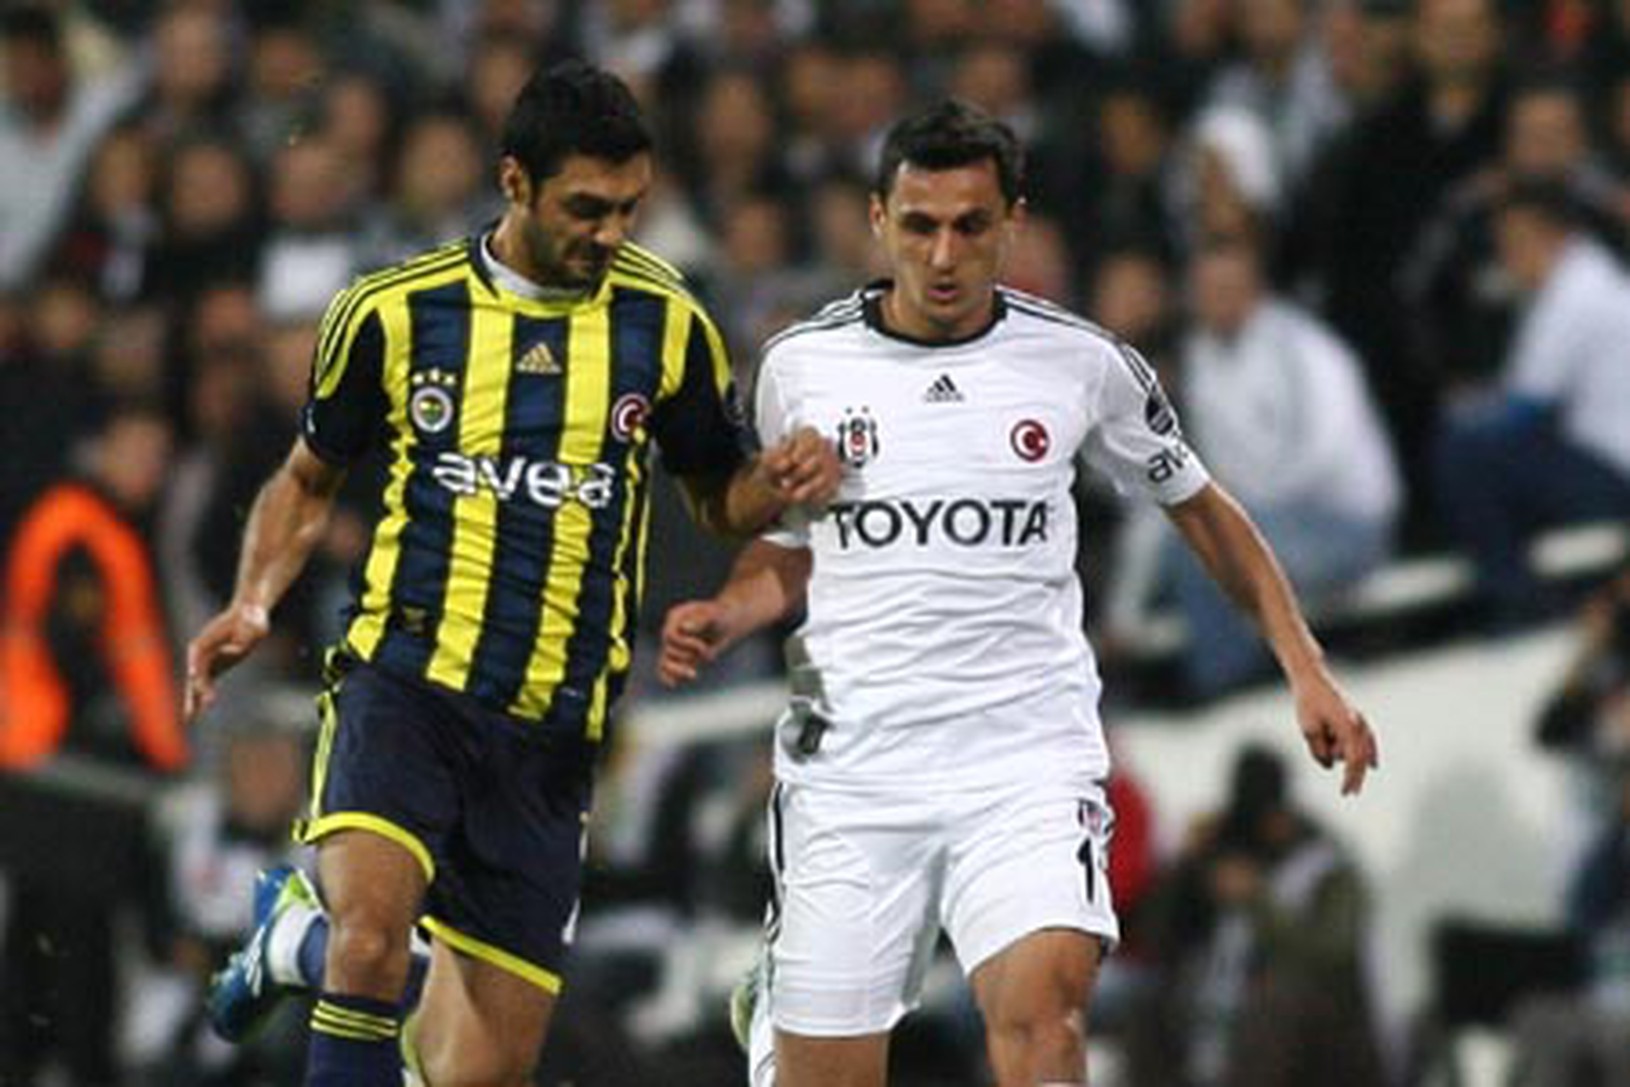 Momentka z istanbulského derby